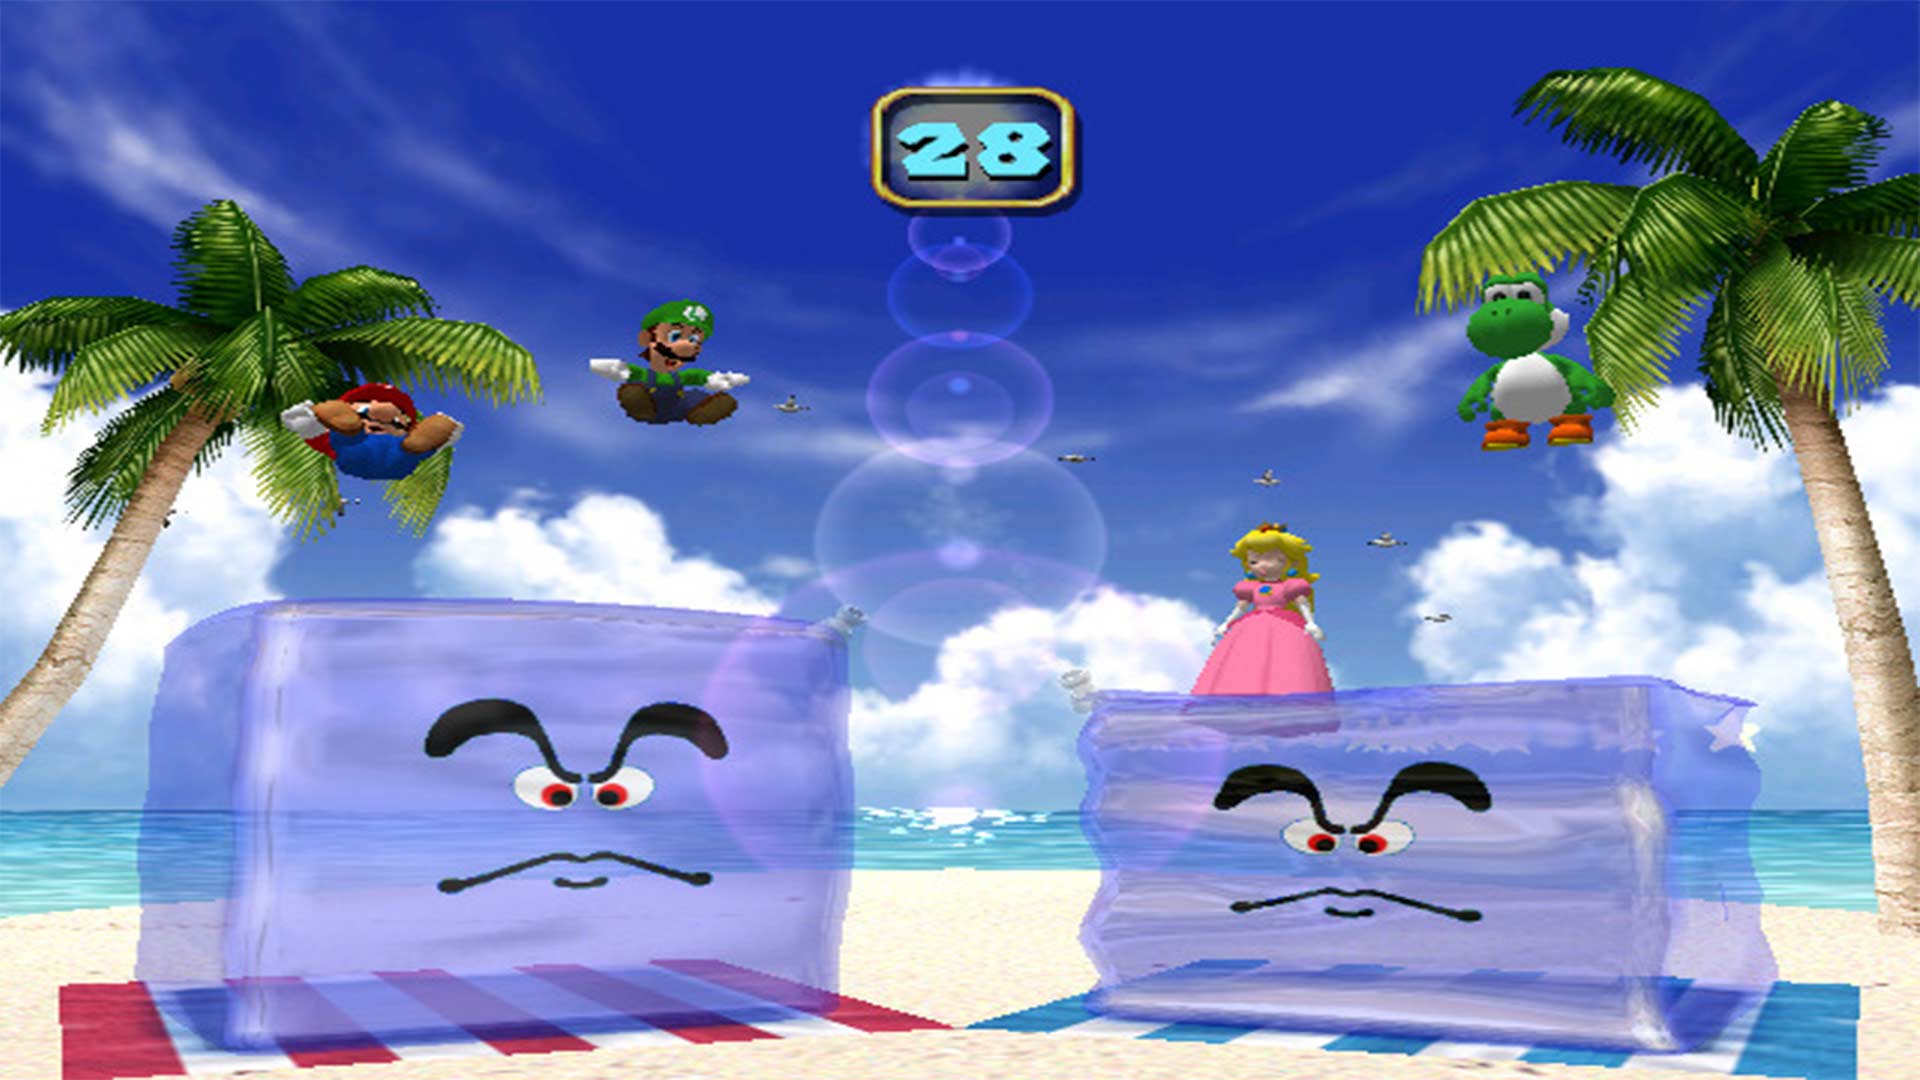 Mario Party 4: Der GameCube wird zum PartyCube